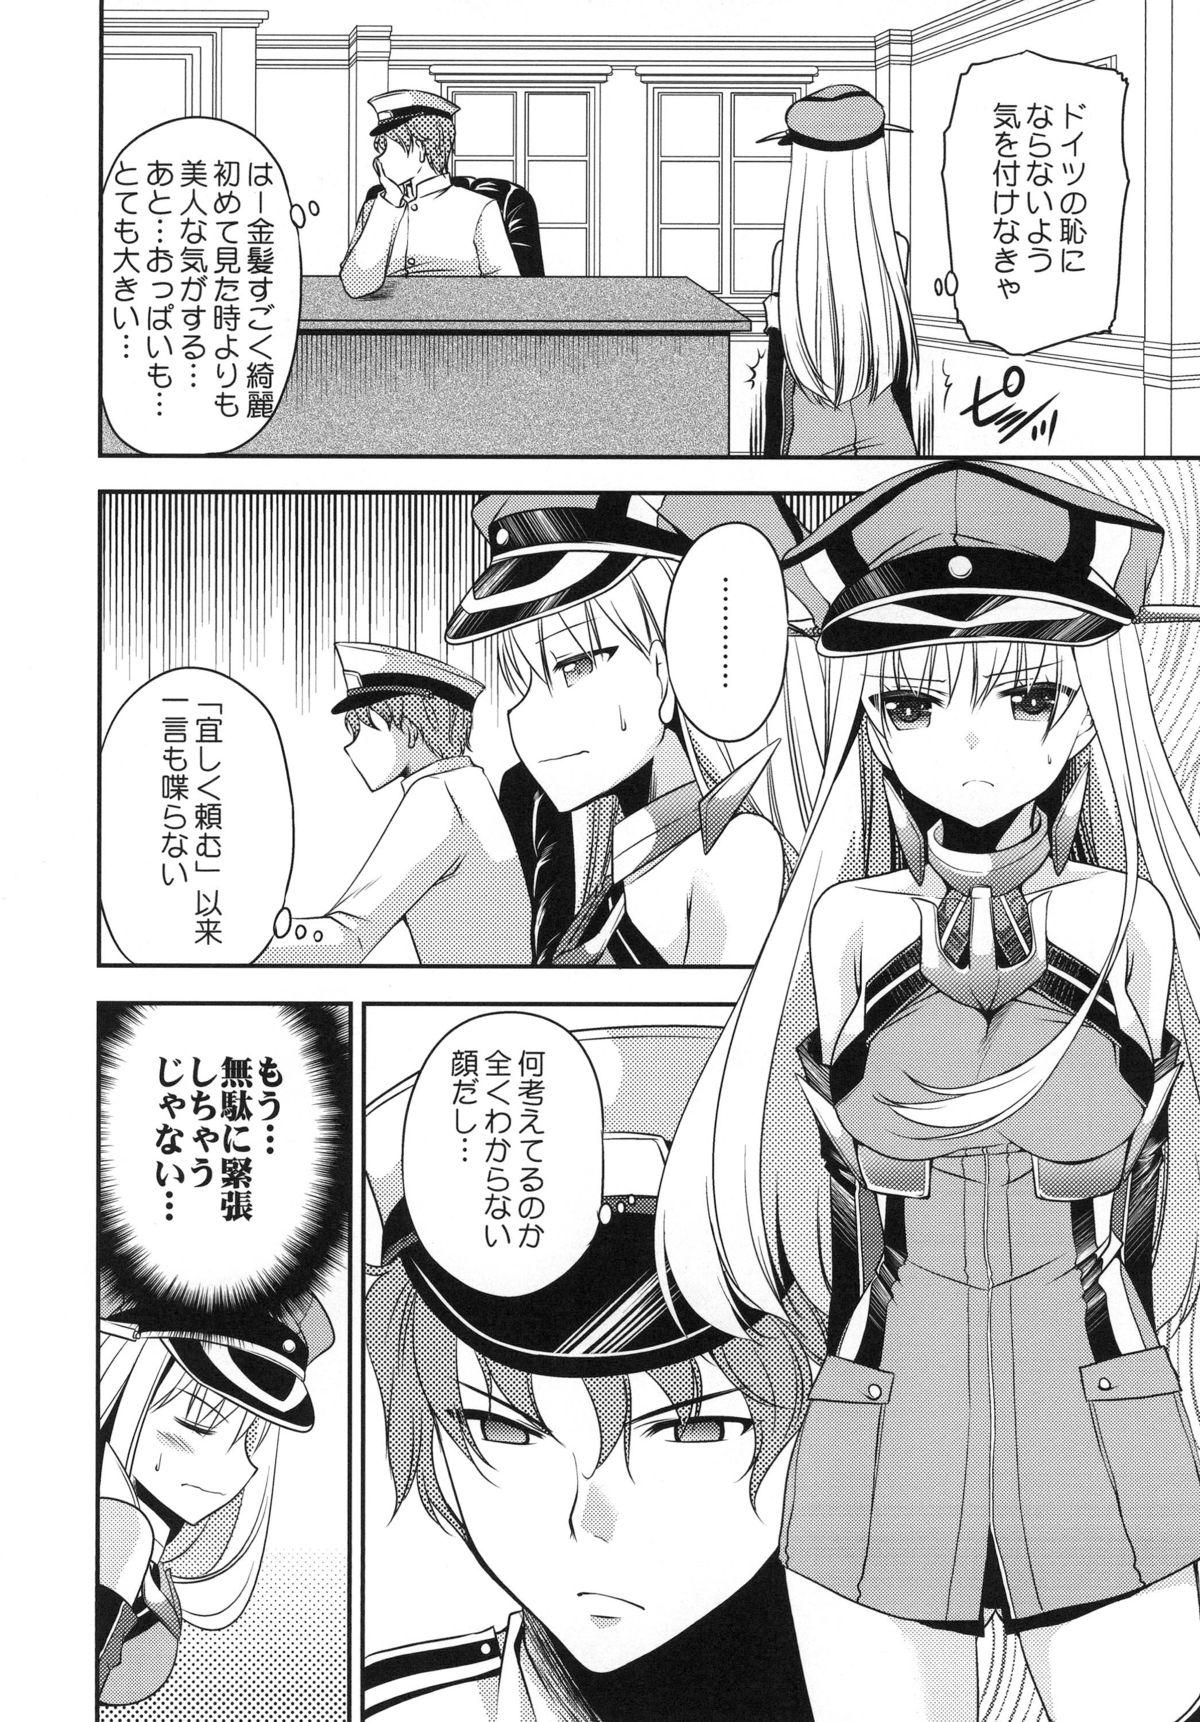 Omorashi Bismarck 4